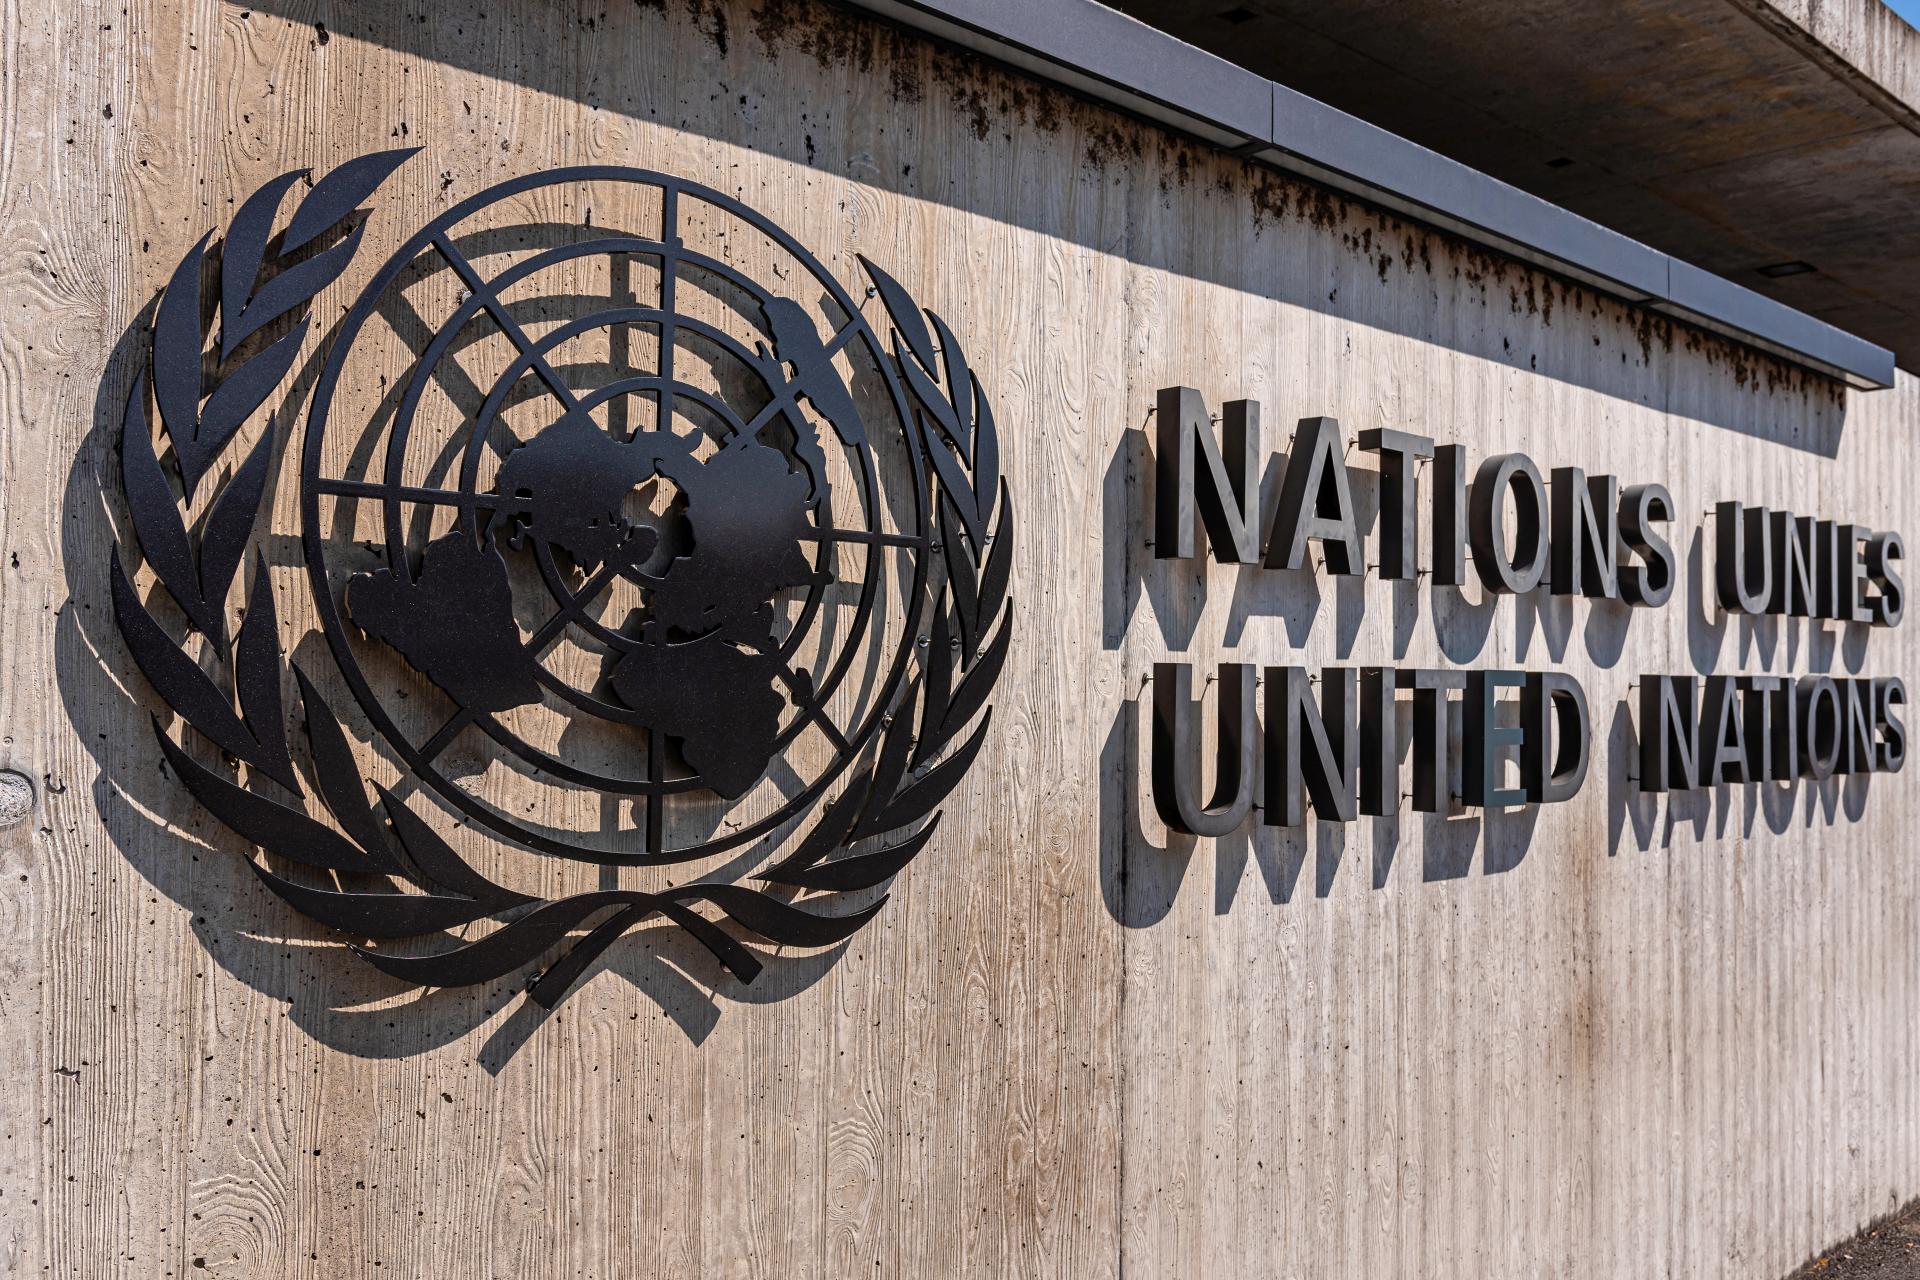 Valné shromáždění OSN podpořilo myšlenku palestinského členství, ČR byla proti